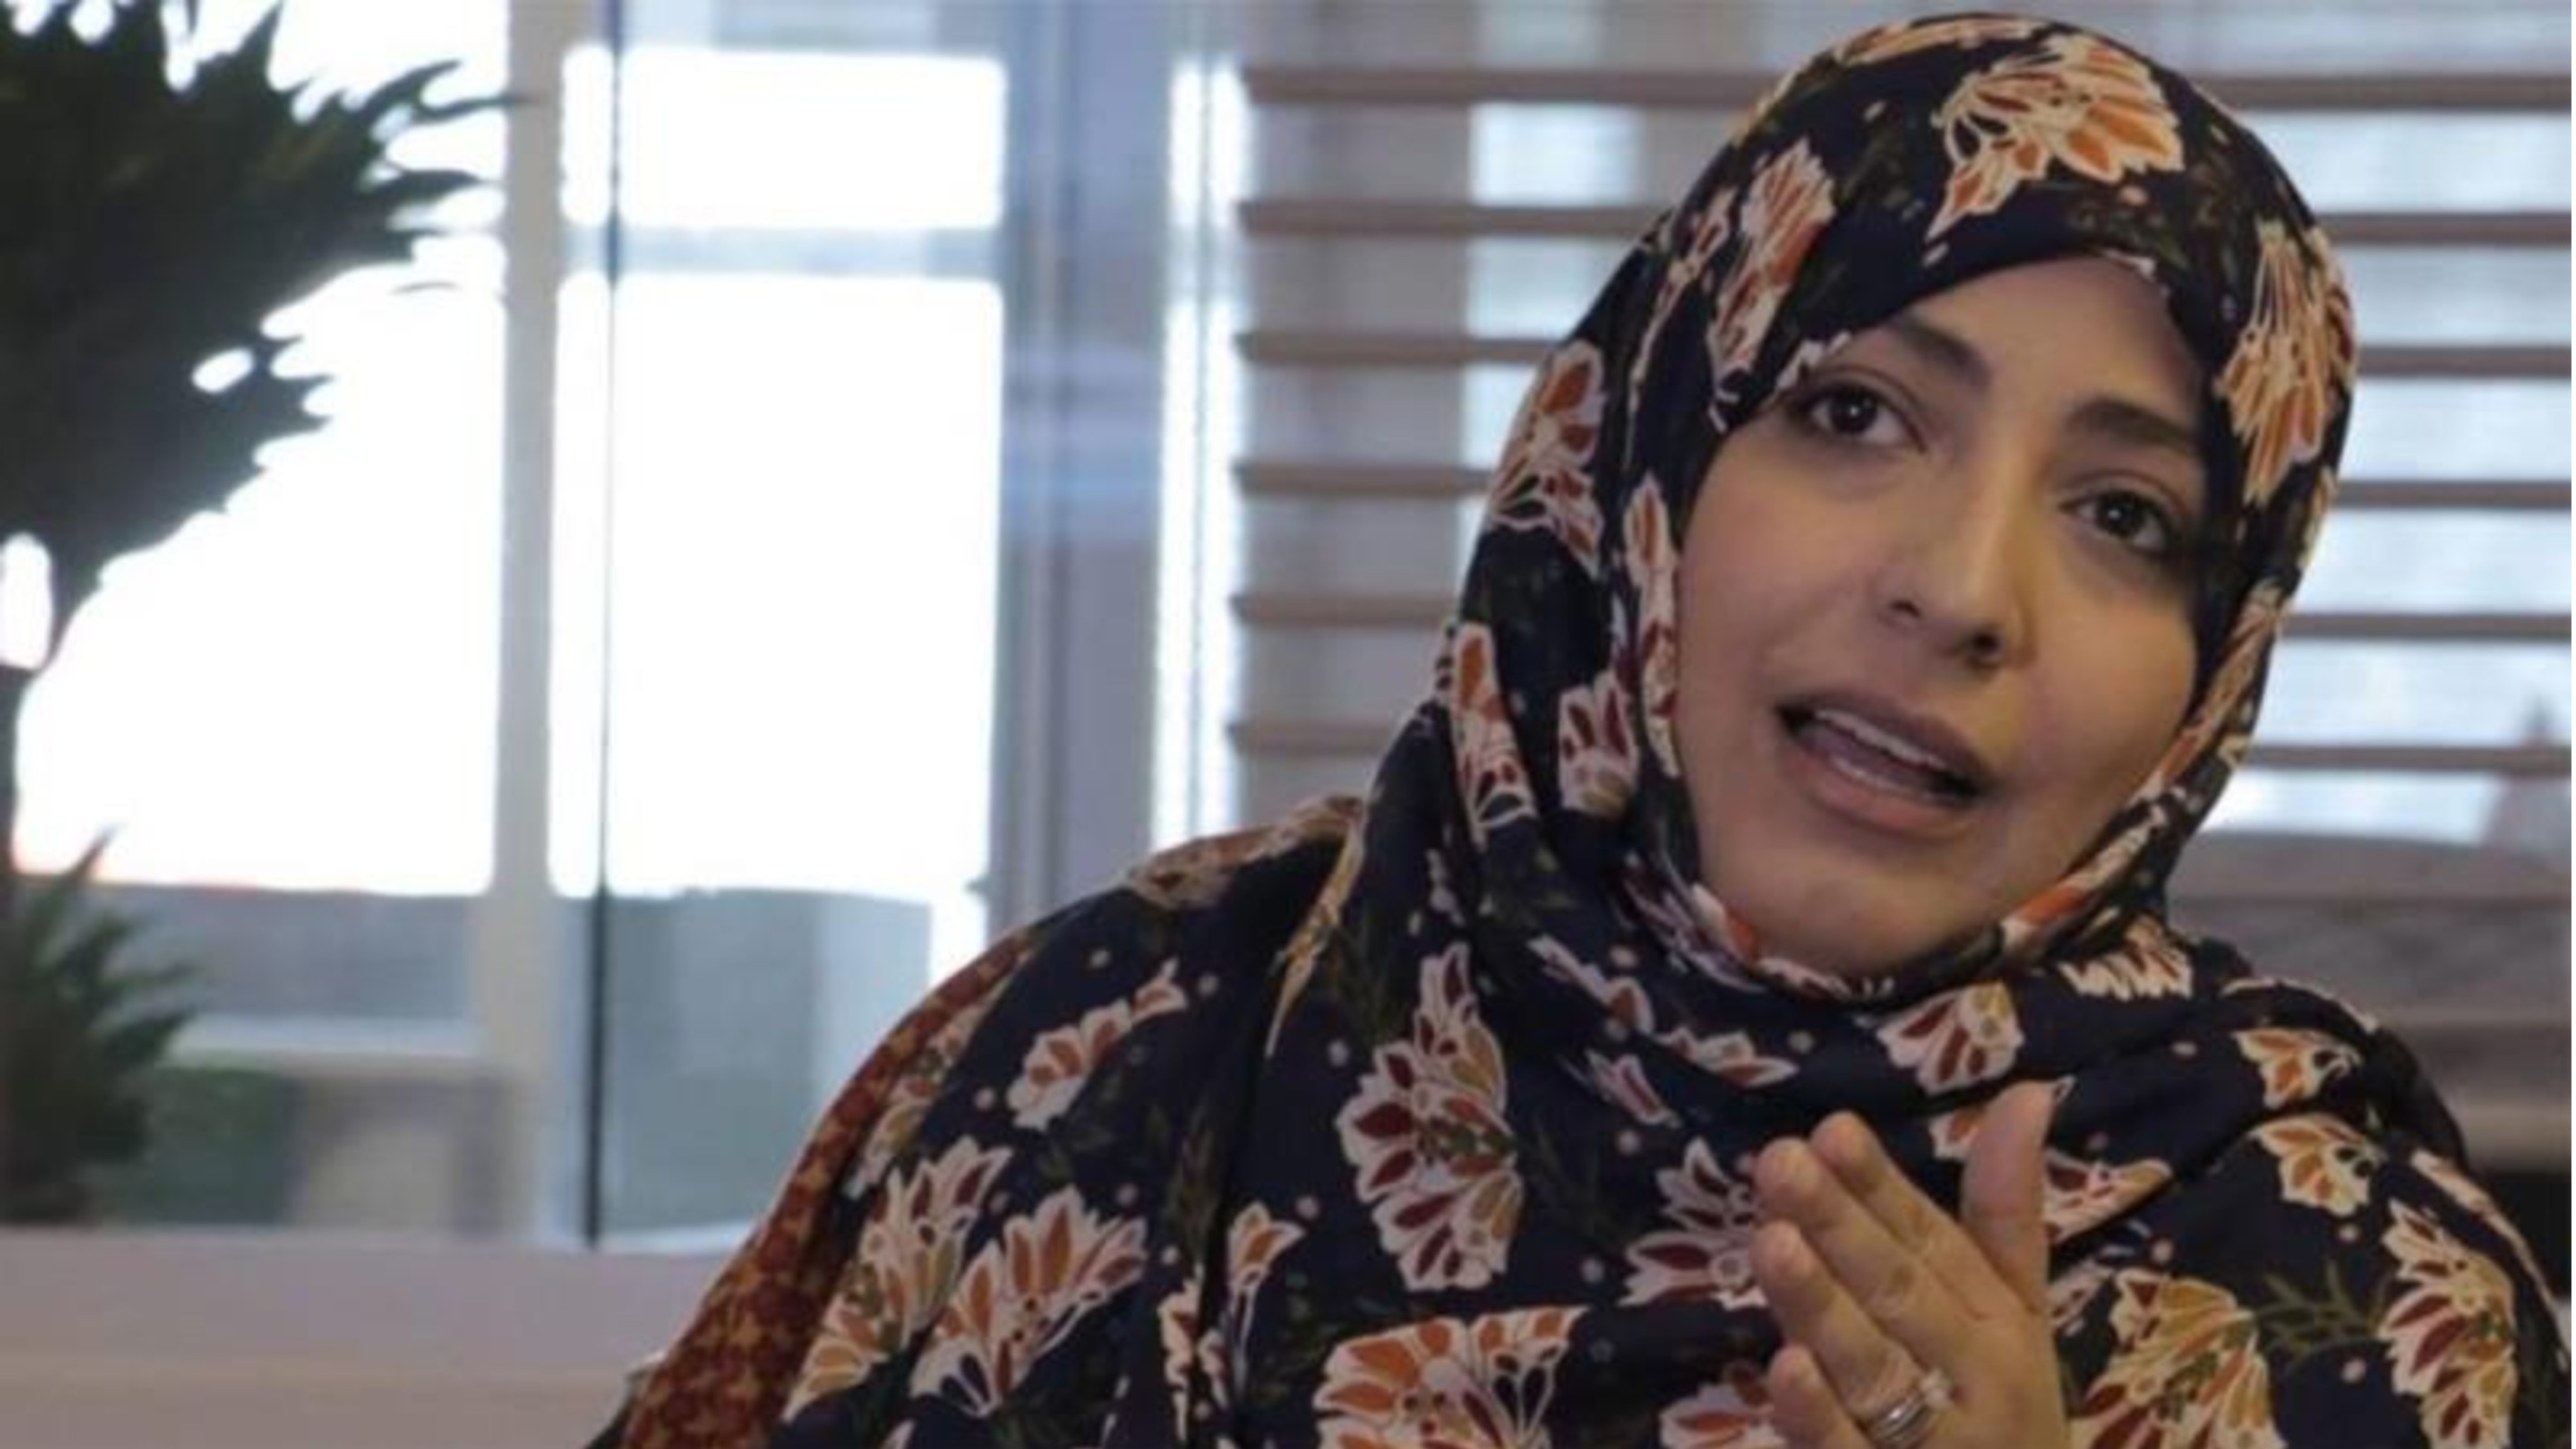 حوار الناشطة الحائزة على جائزة نوبل للسلام توكل كرمان مع عربي 21 - الجزء الثالث والاخير